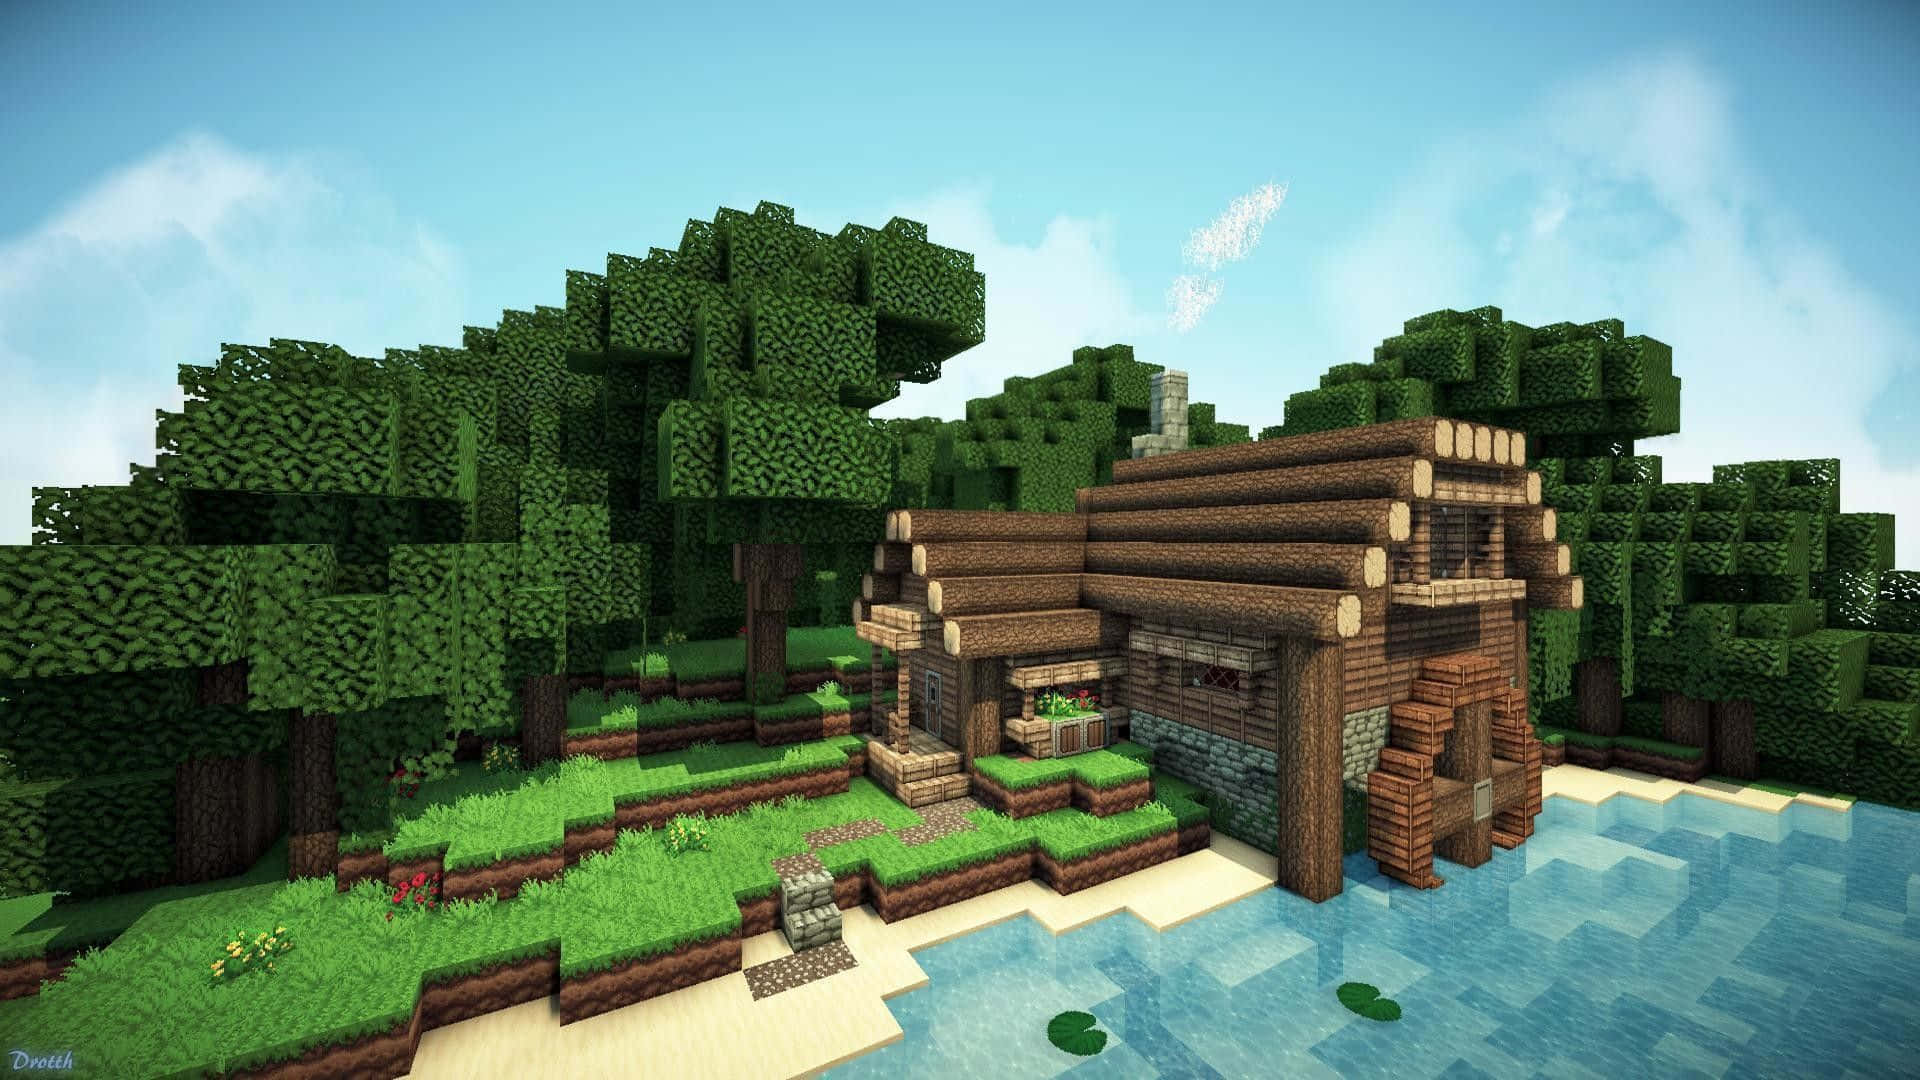 Willkommenin Der Welt Von Minecraft Häusern - Jetzt Bauen Und Gestalten